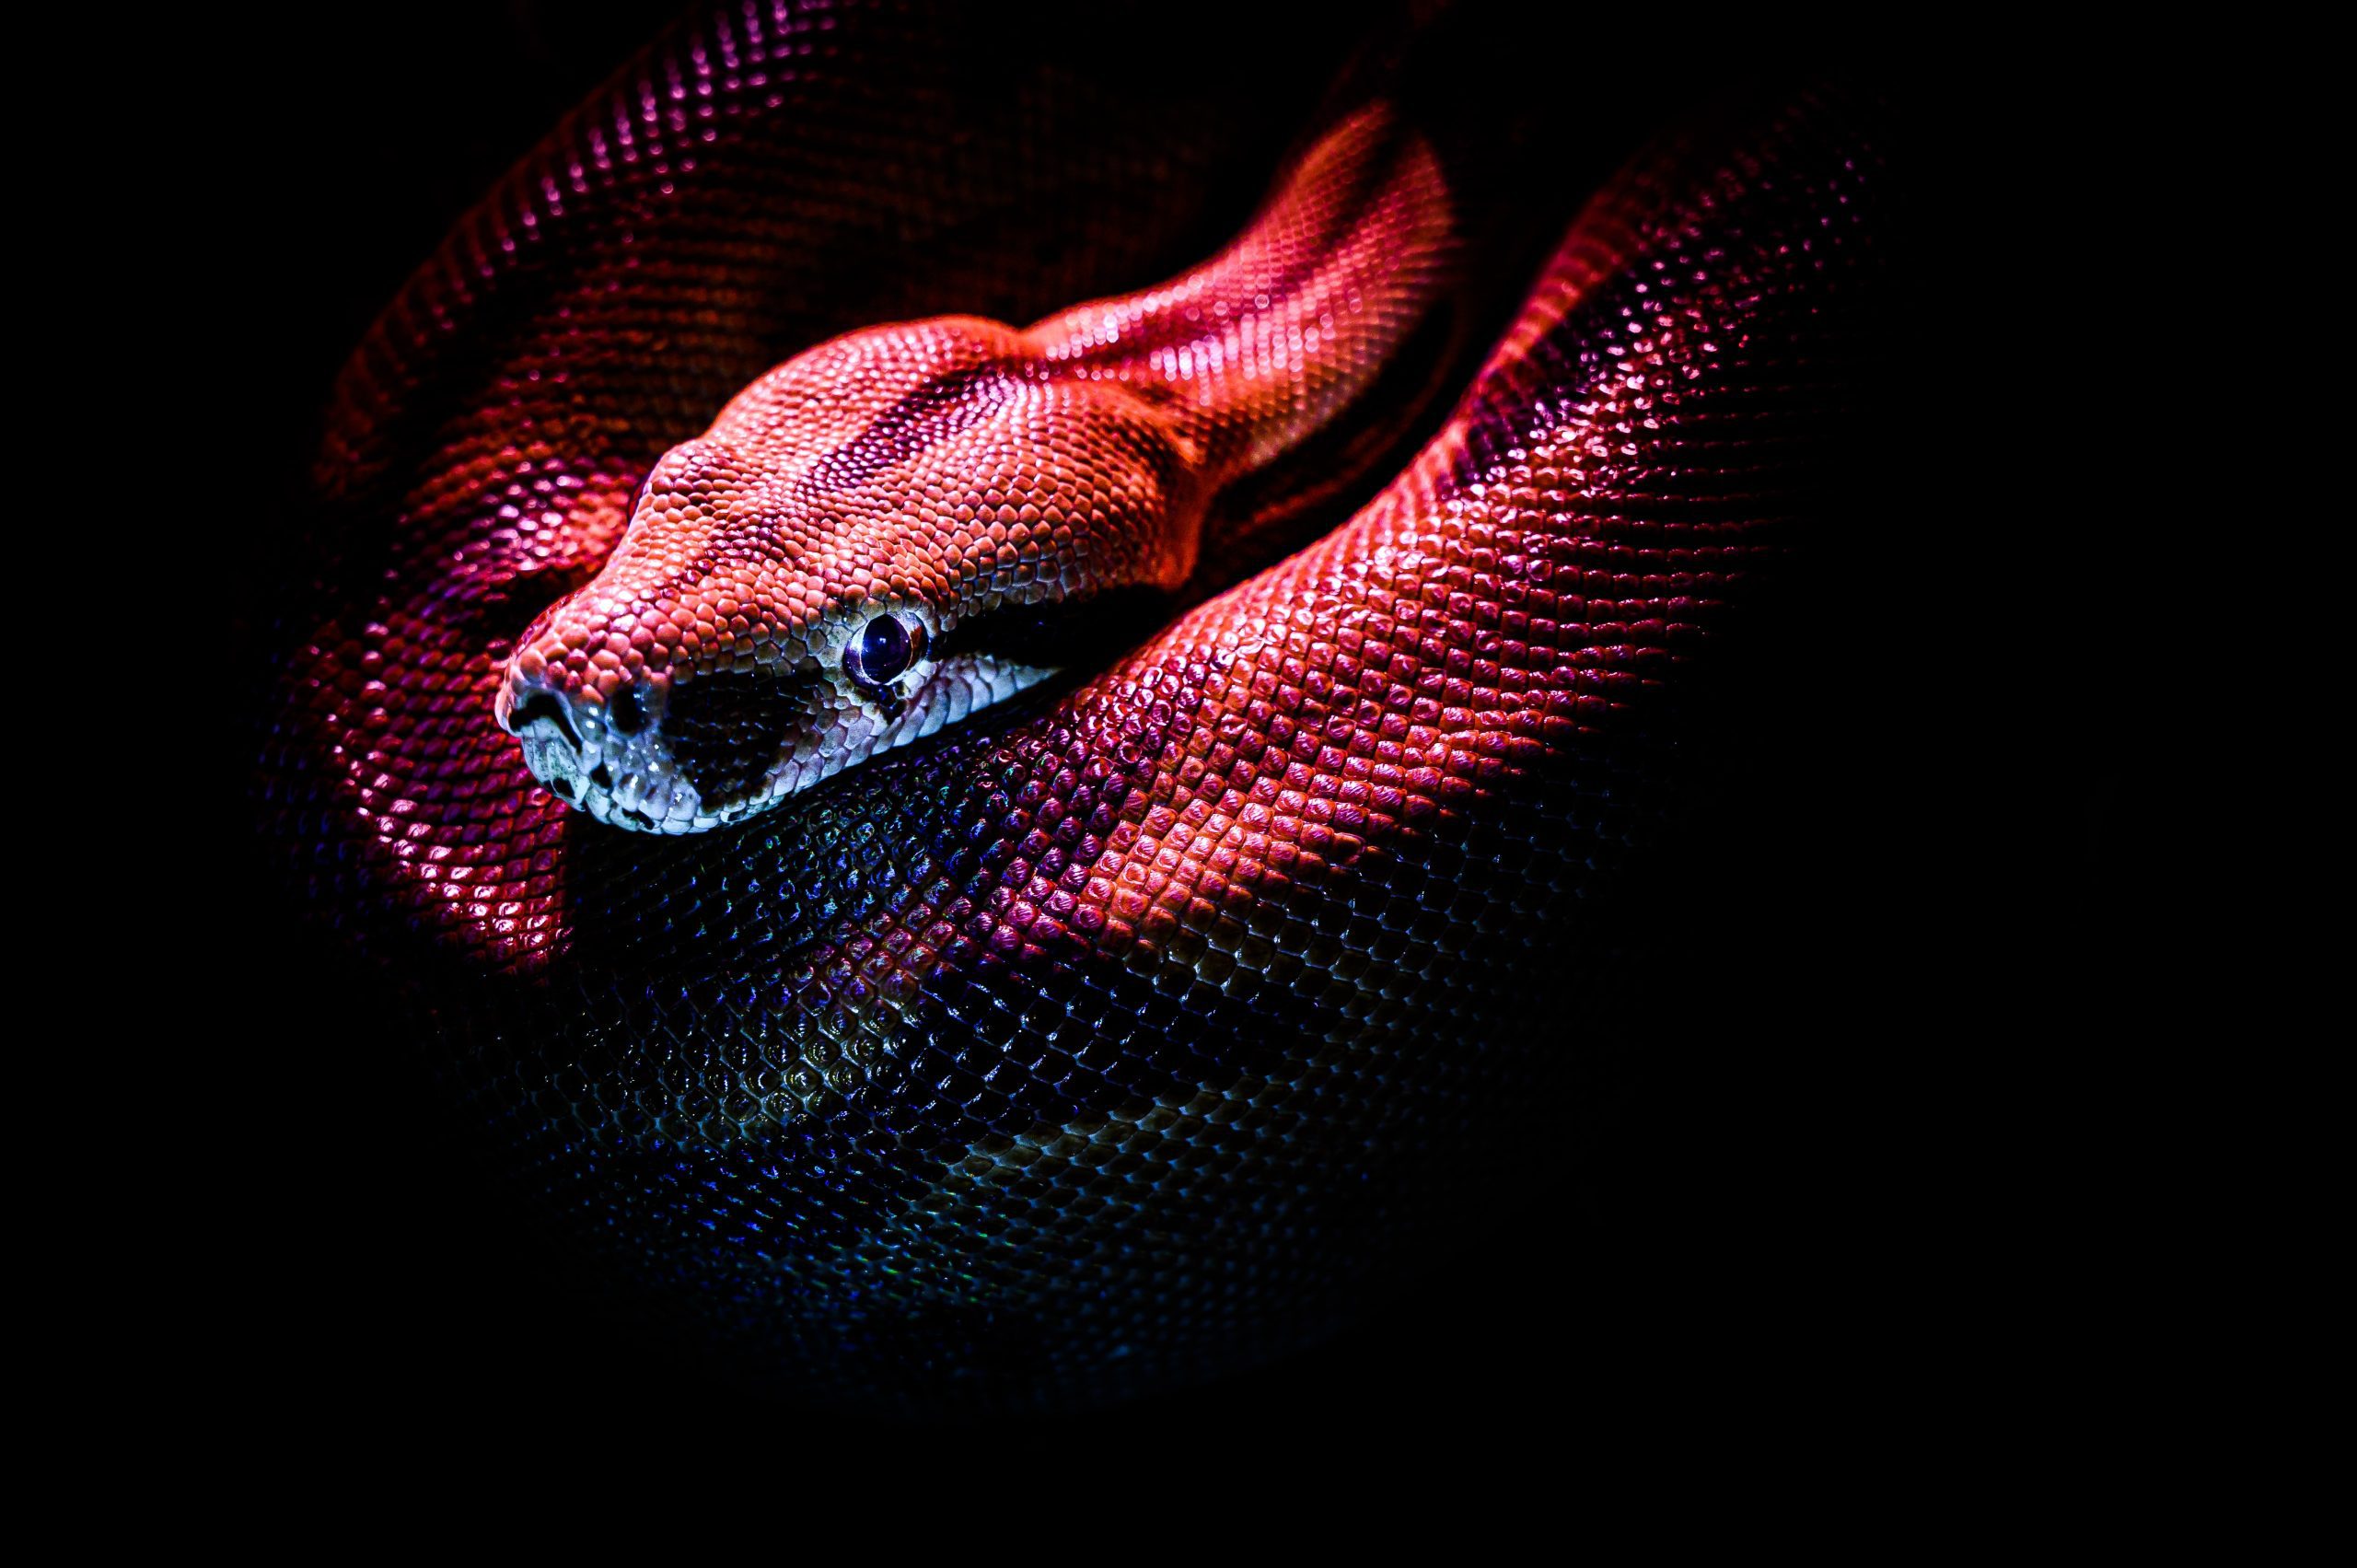 Significado de sonhar com cobra e serpente: simbolismo e interpretações